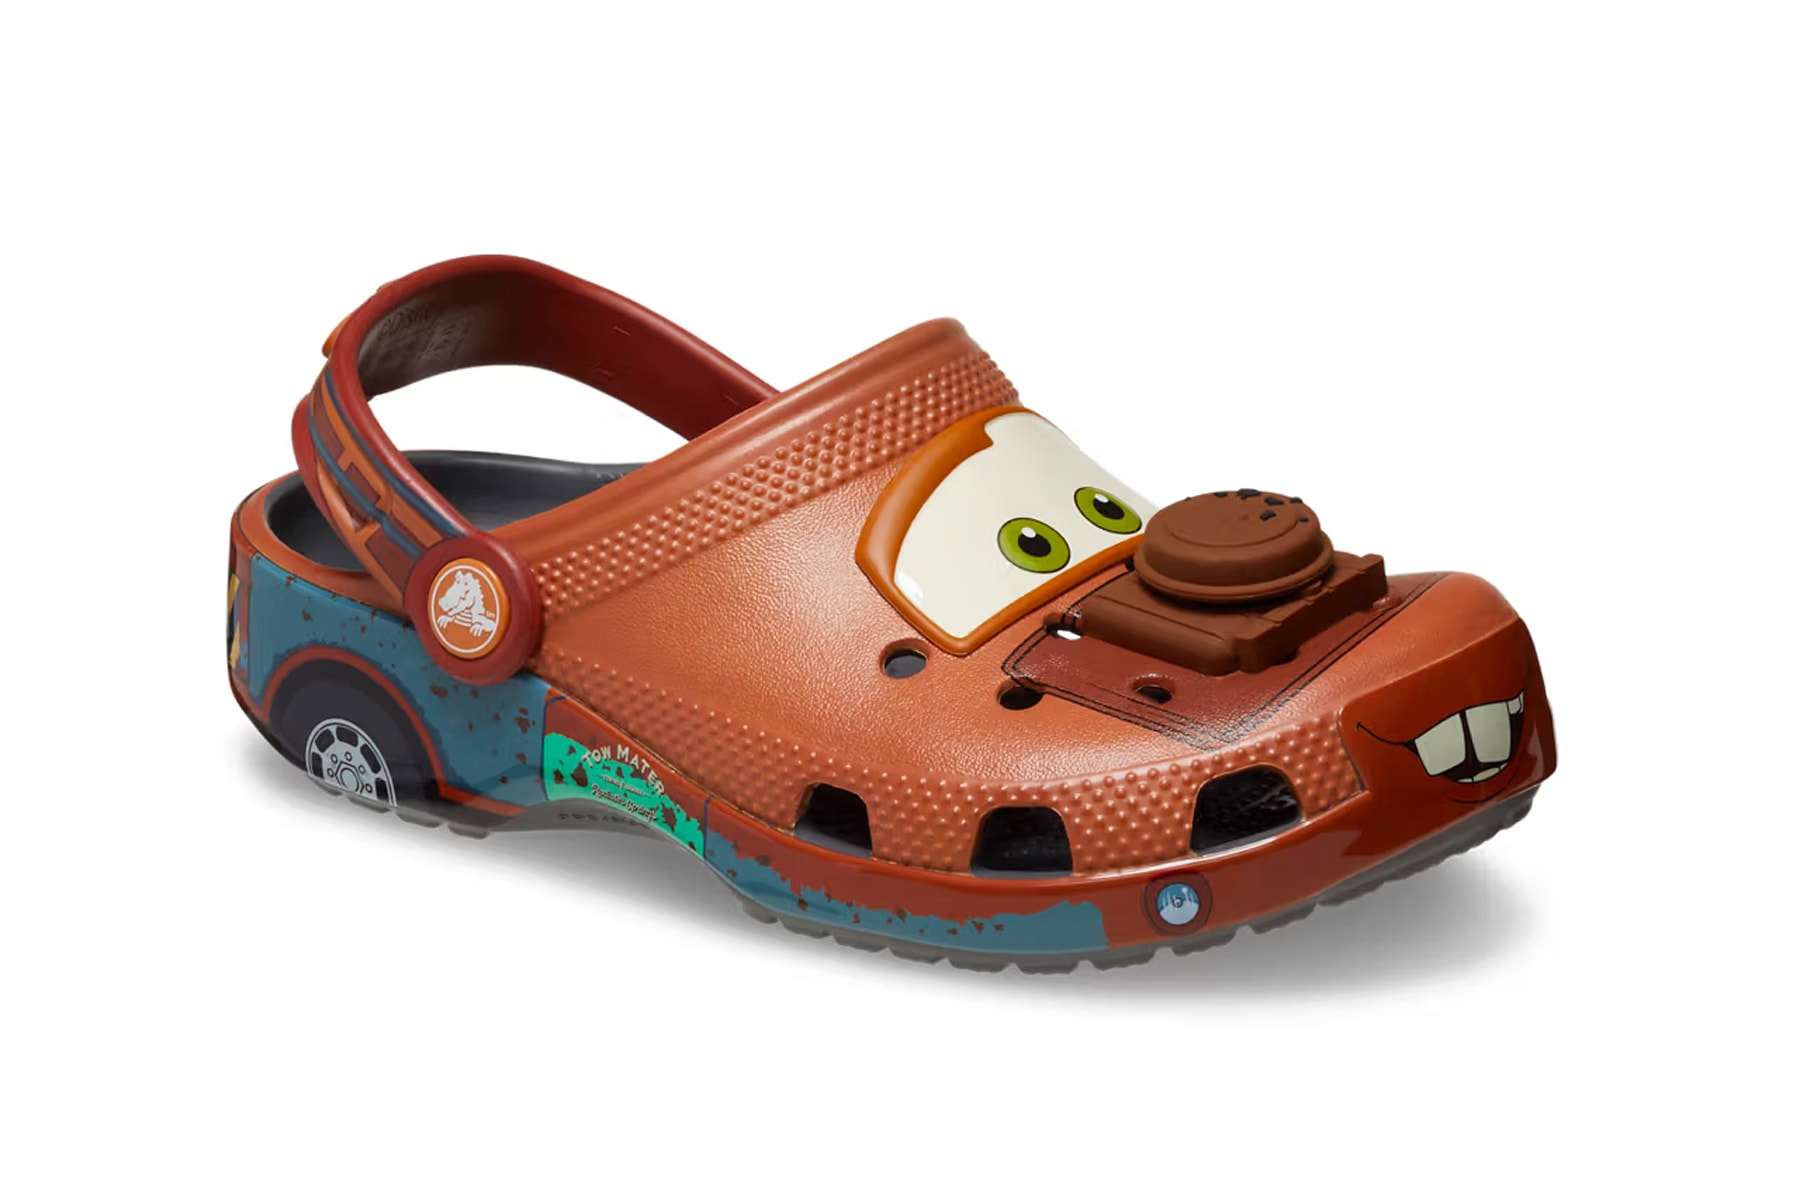 クロックスが映画『カーズ』に登場するメーターに着想したコラボモデルを発売 Pixar Crocs Classic Clog Mater Release Date info store list buying guide photos price